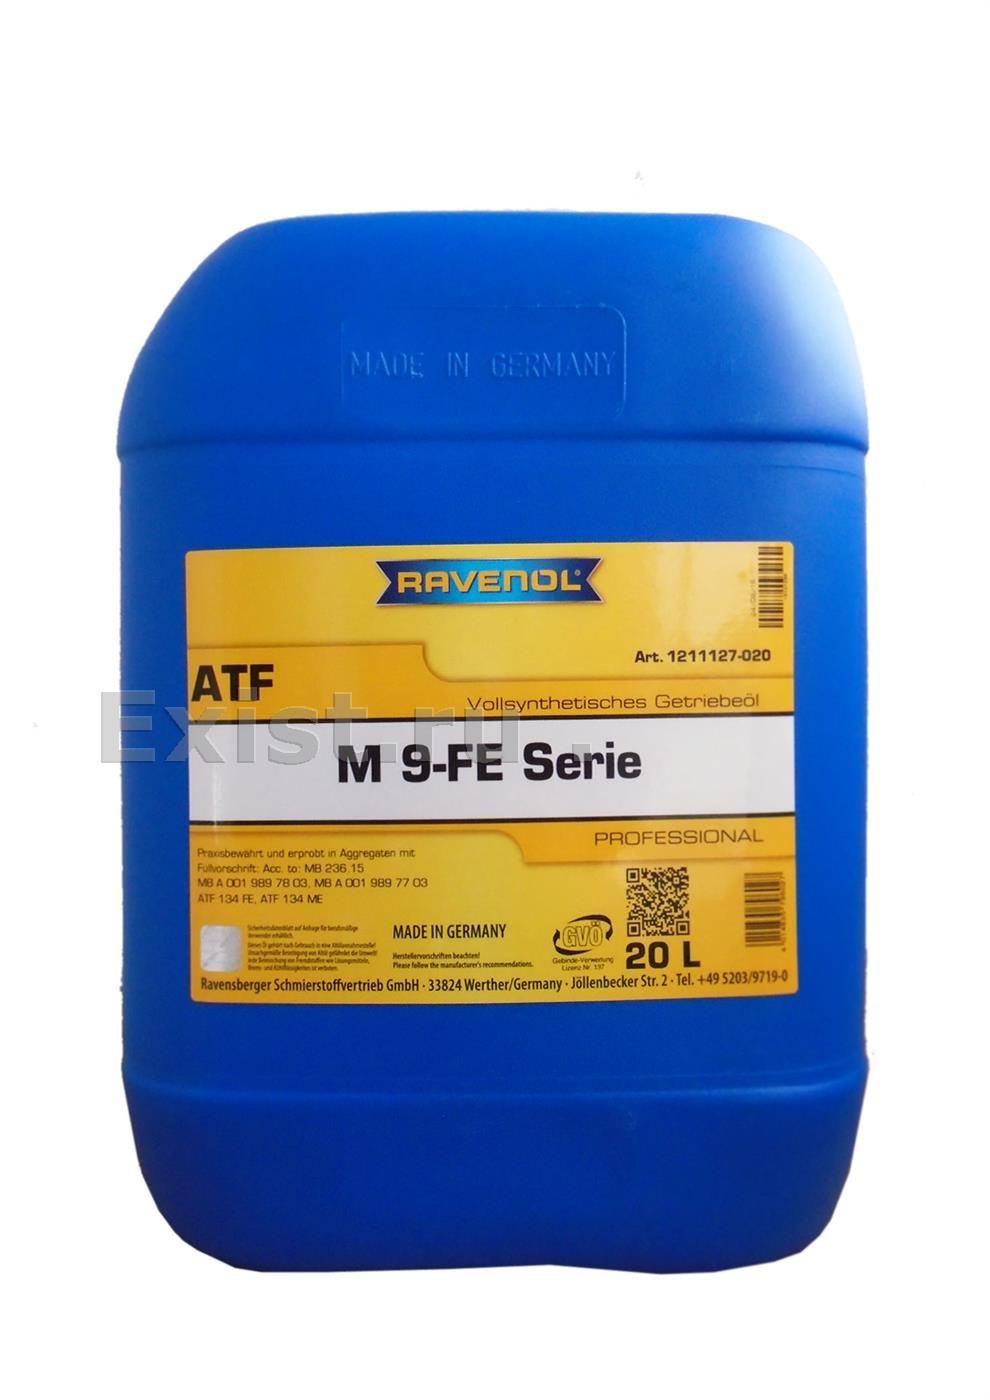 Синтетическое масло для акпп автомобилей mercedes-benzmb a 001 989 78 03, mb a 001 989 77 03окрашено в голубой цвет